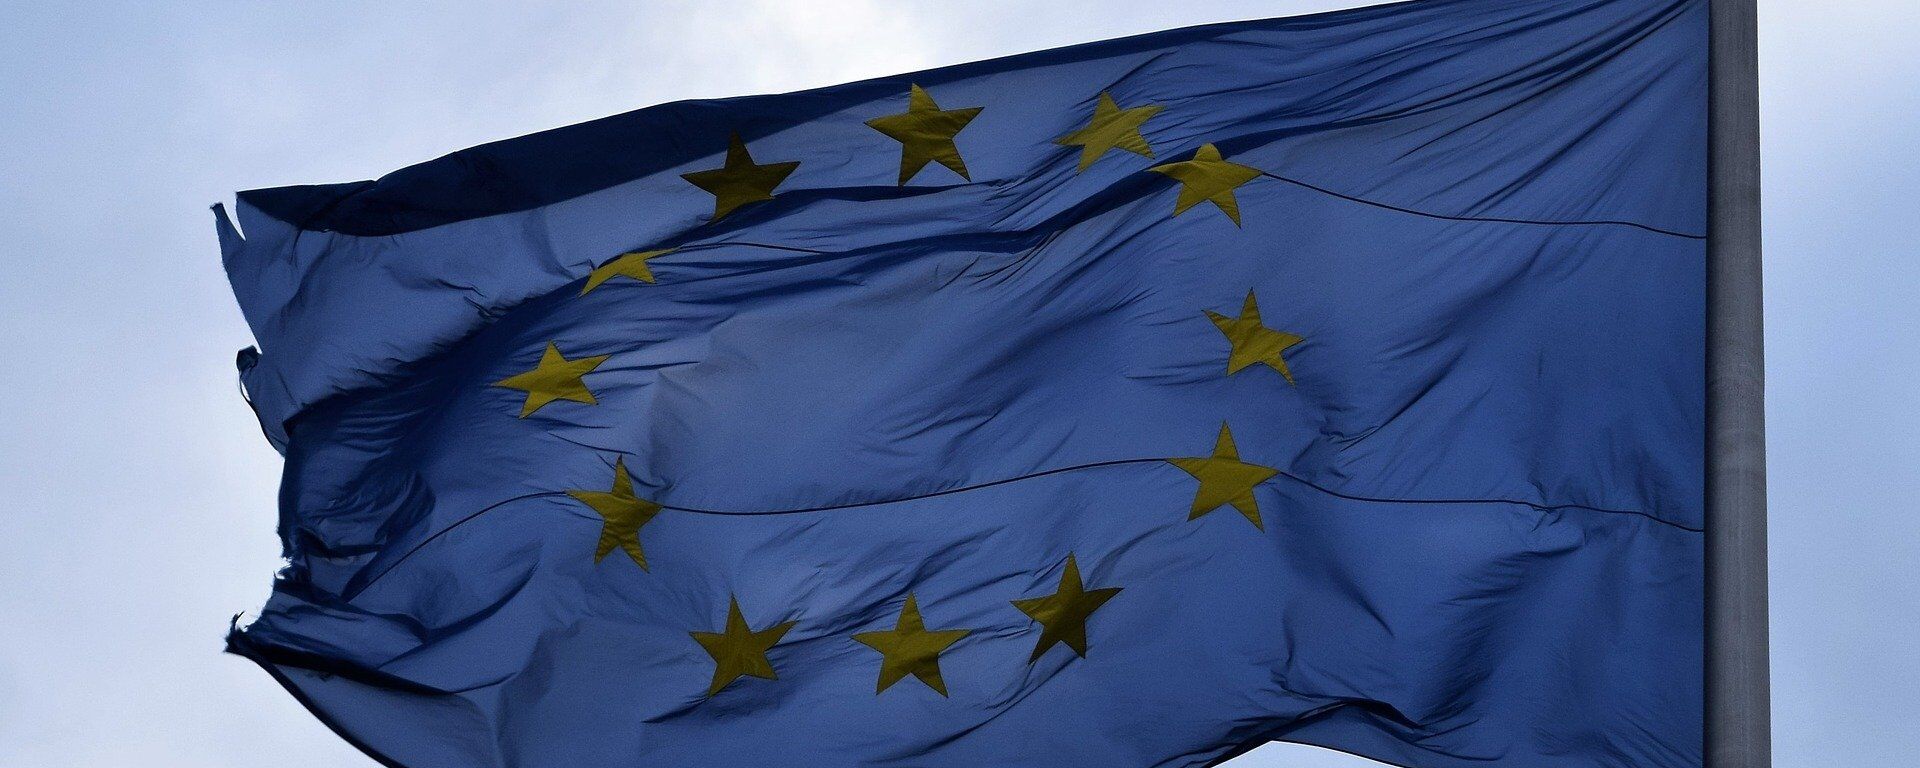 Bandera de la UE - Sputnik Mundo, 1920, 13.12.2019